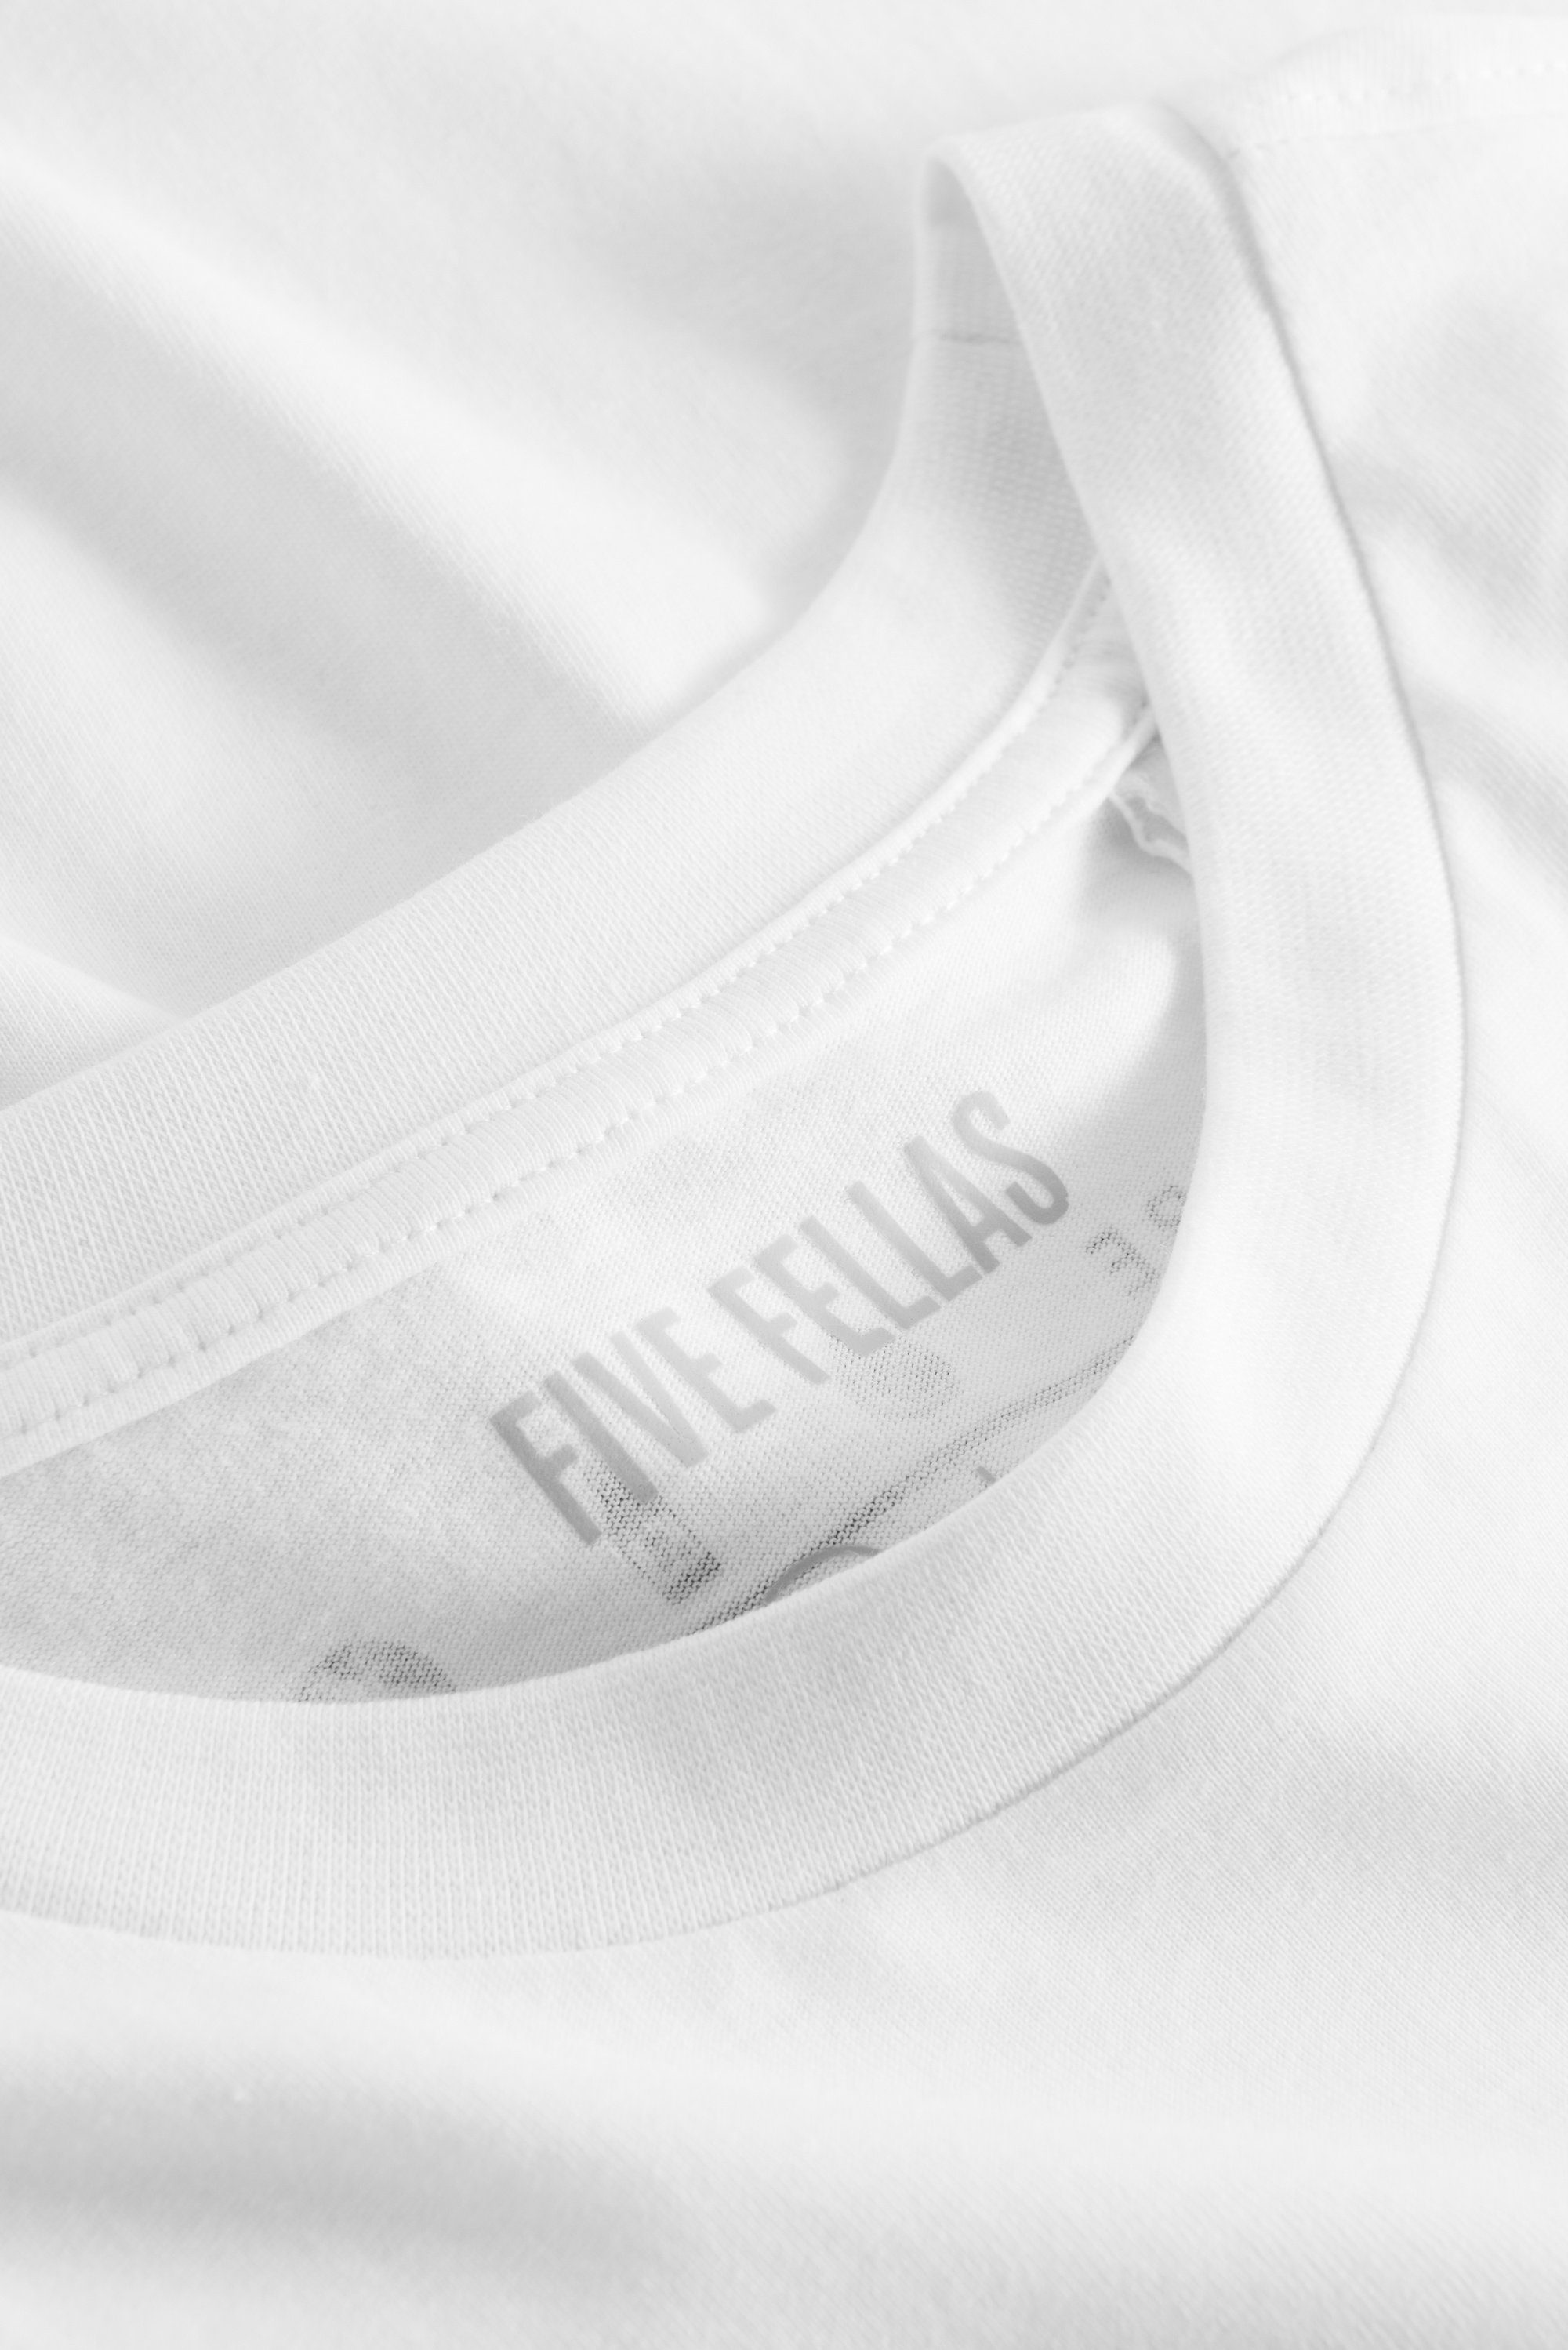 Print white FIVE T-Shirt LUCA FELLAS 900 3D